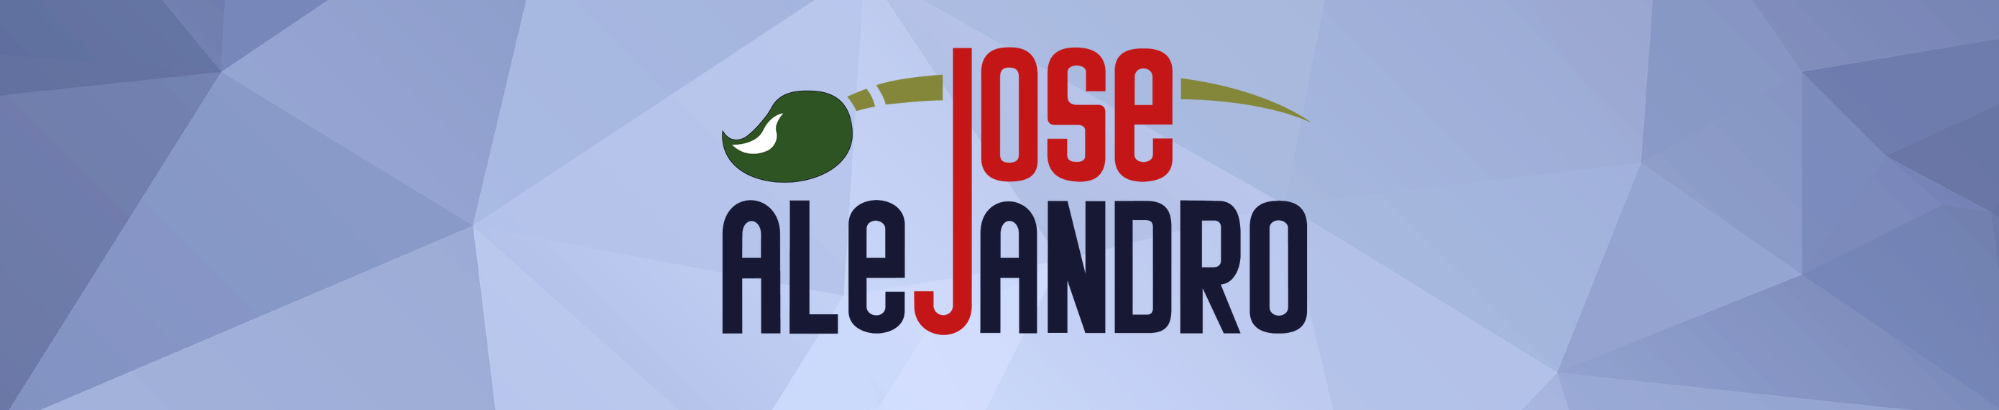 Jose Alejandro's profile banner